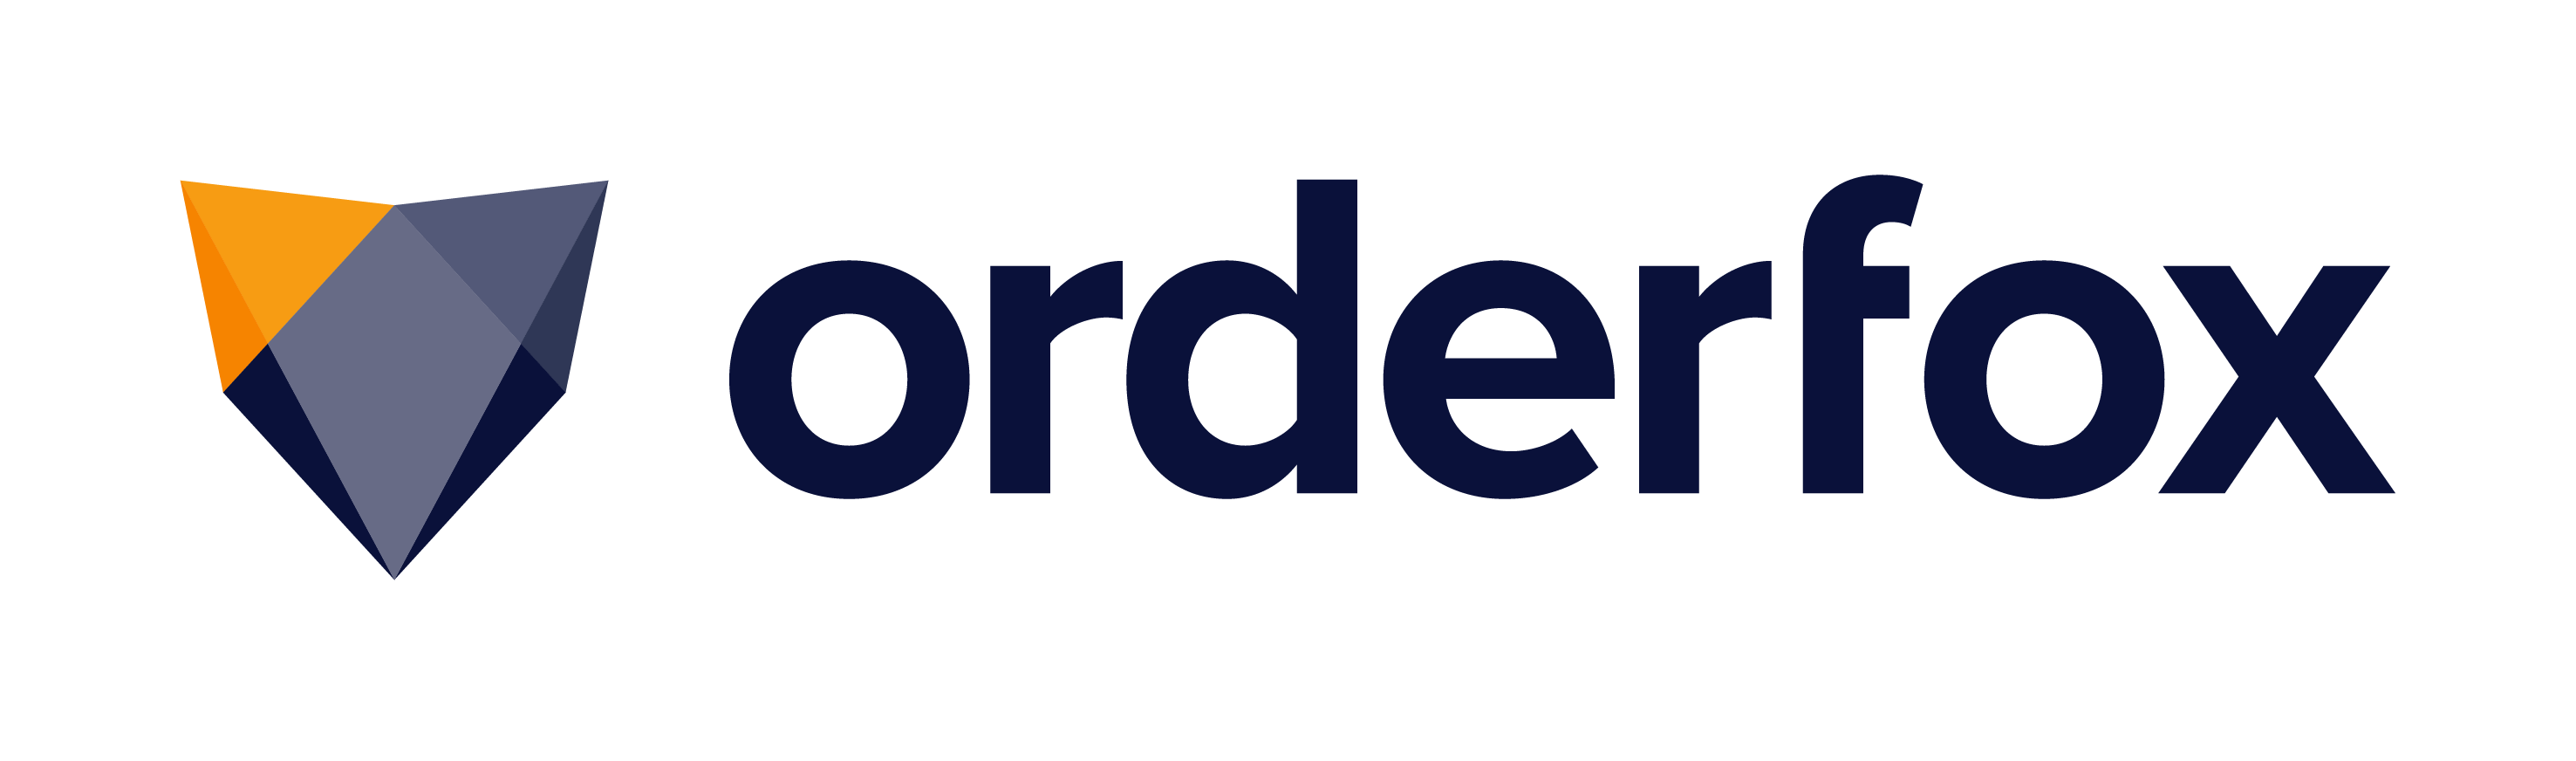 ORDERFOX logo coul RVB-1